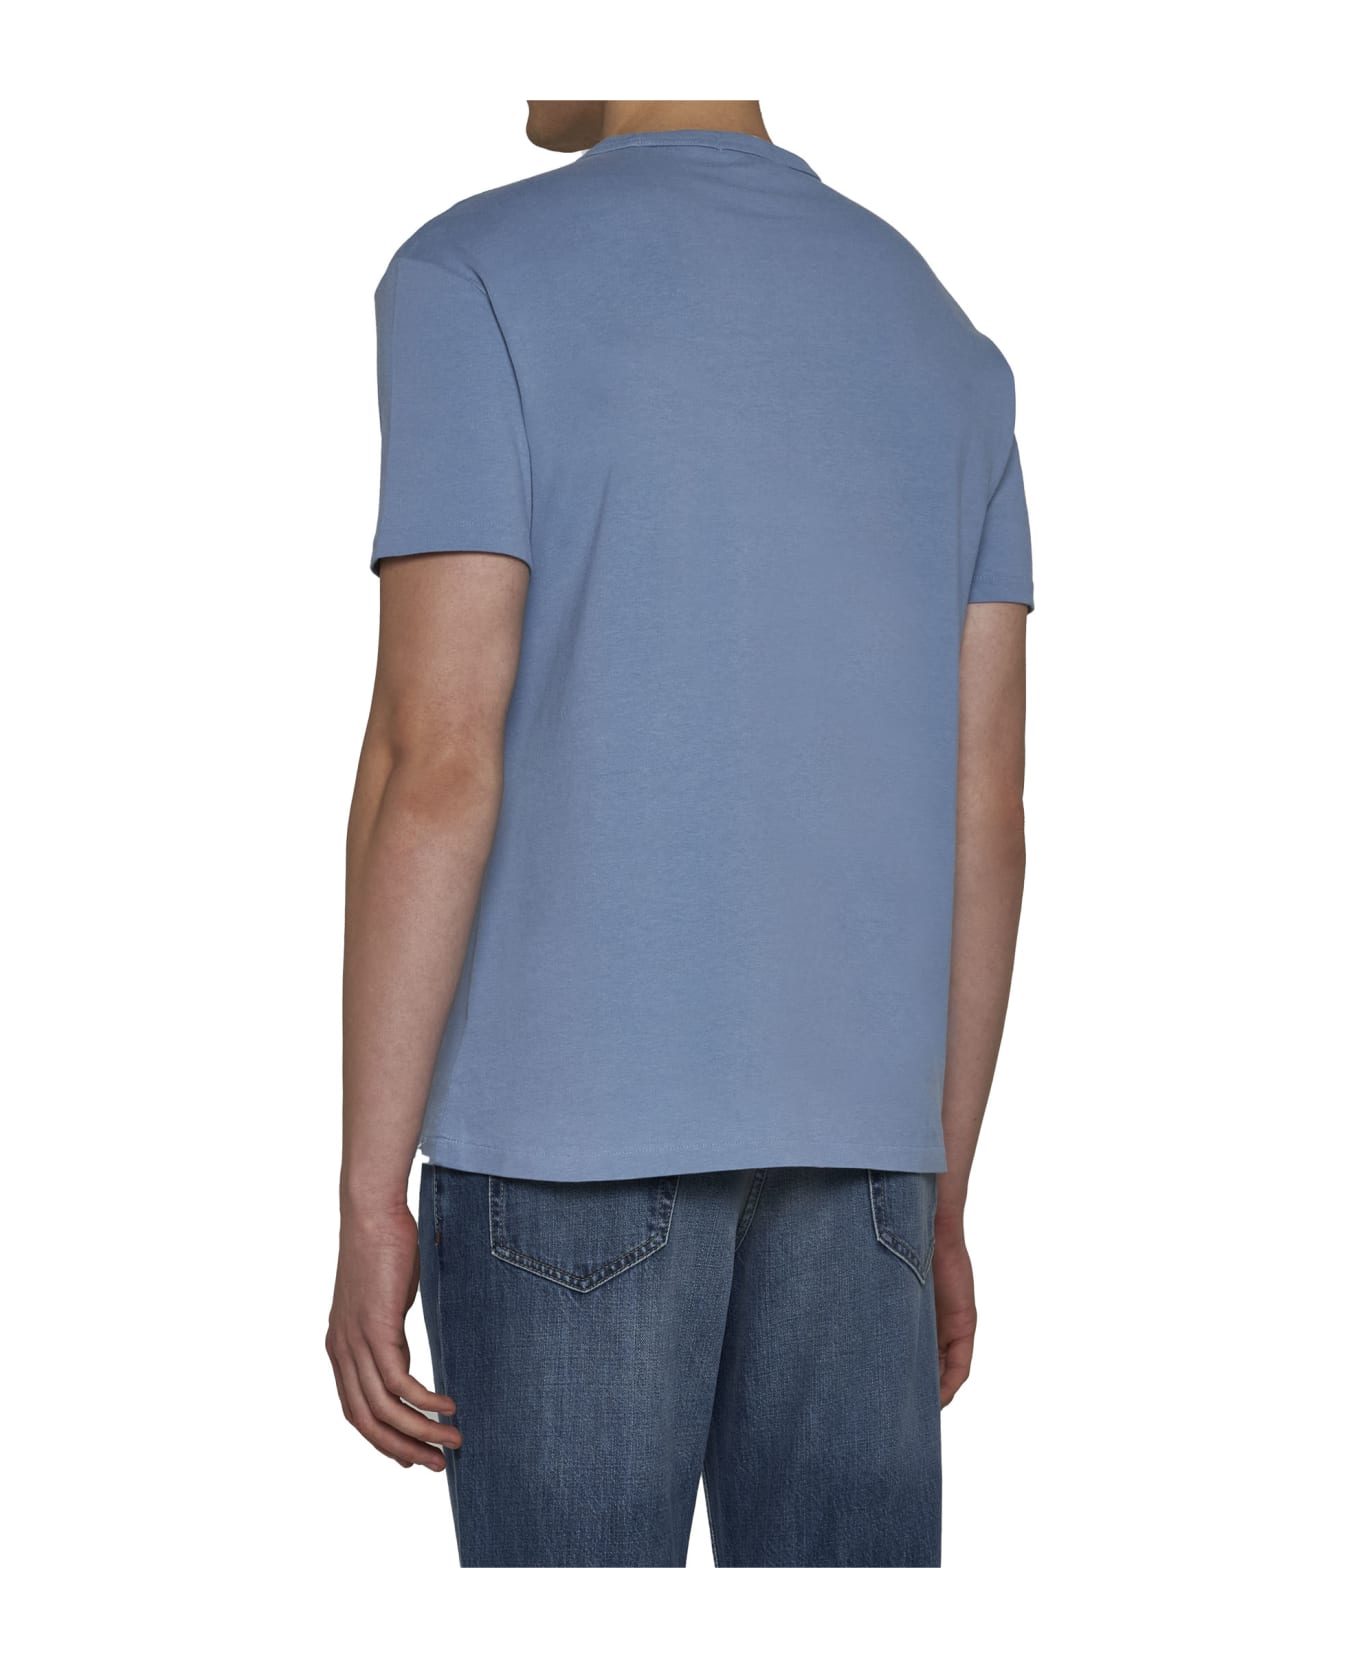 Polo Ralph Lauren T-shirt - Channel blue